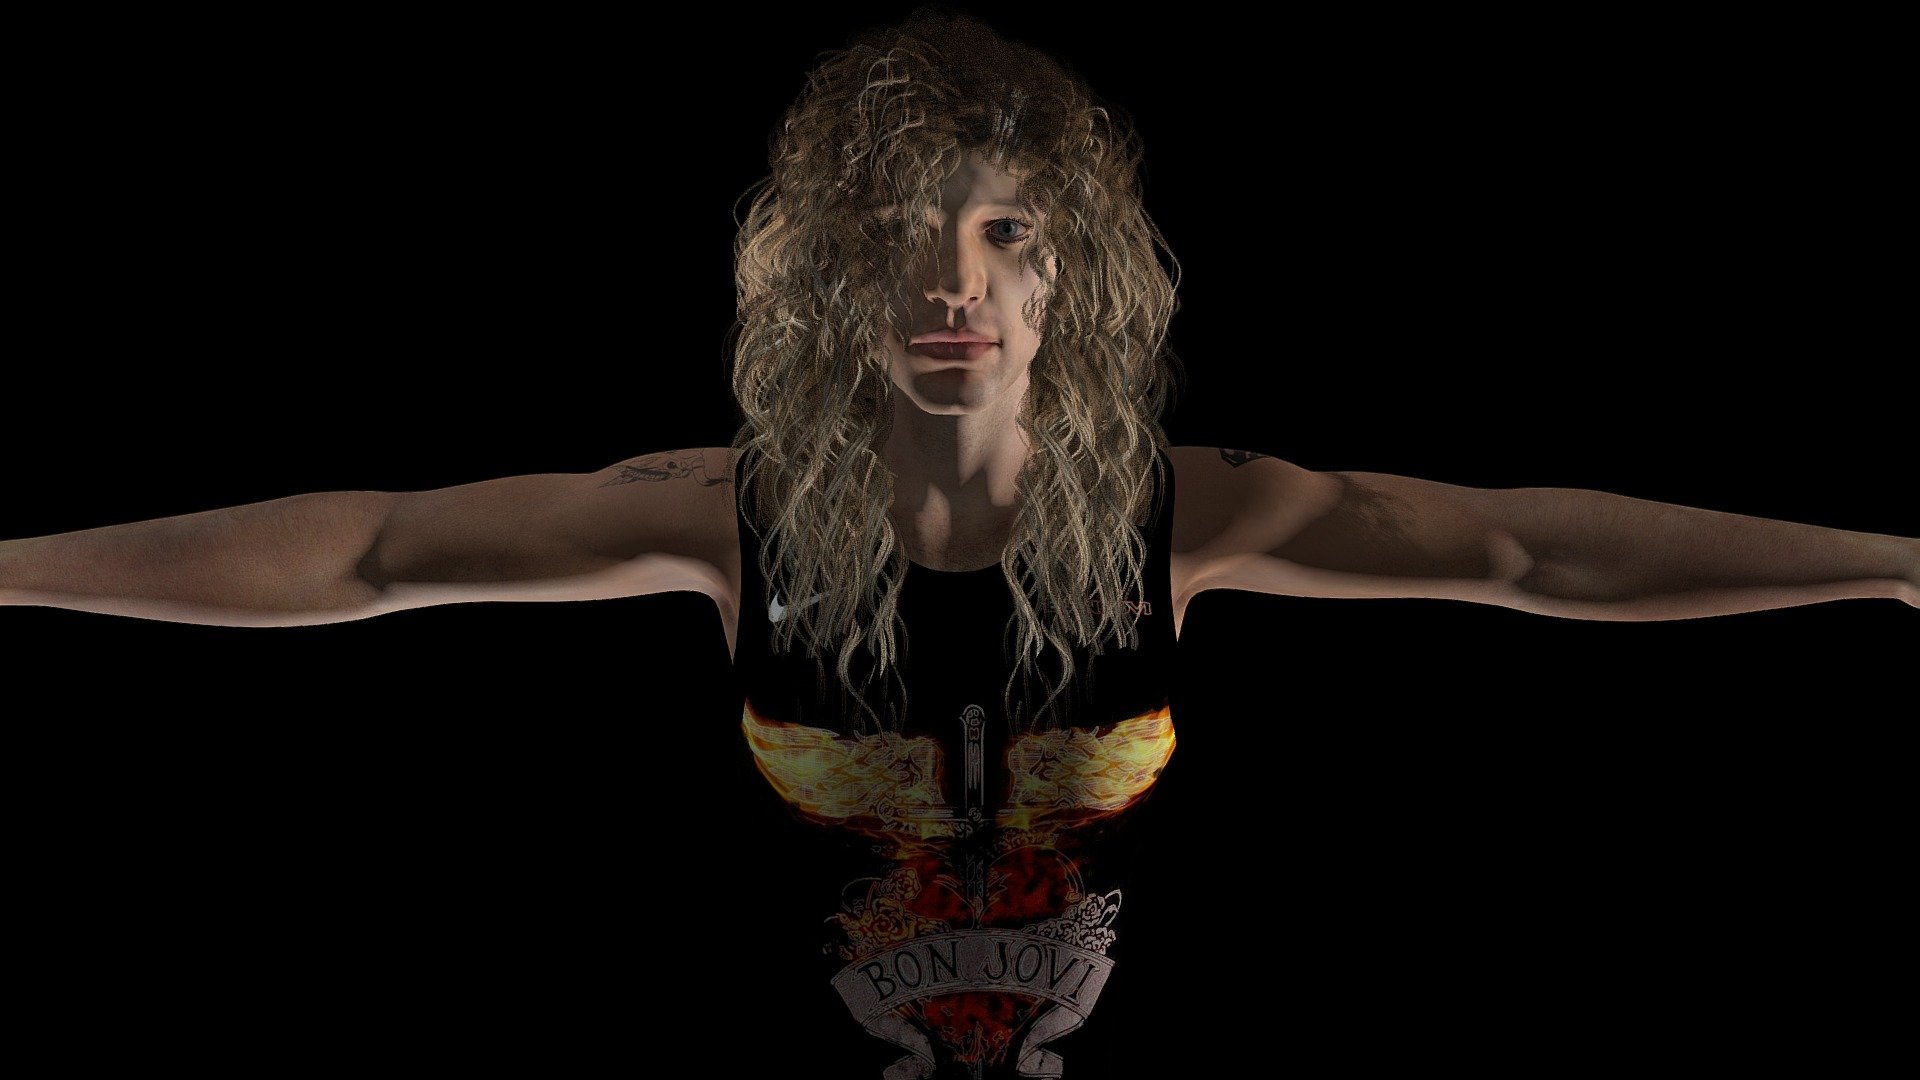 Jon Bon Jovi (custom vest) - 3D model by DMS26s 3d model